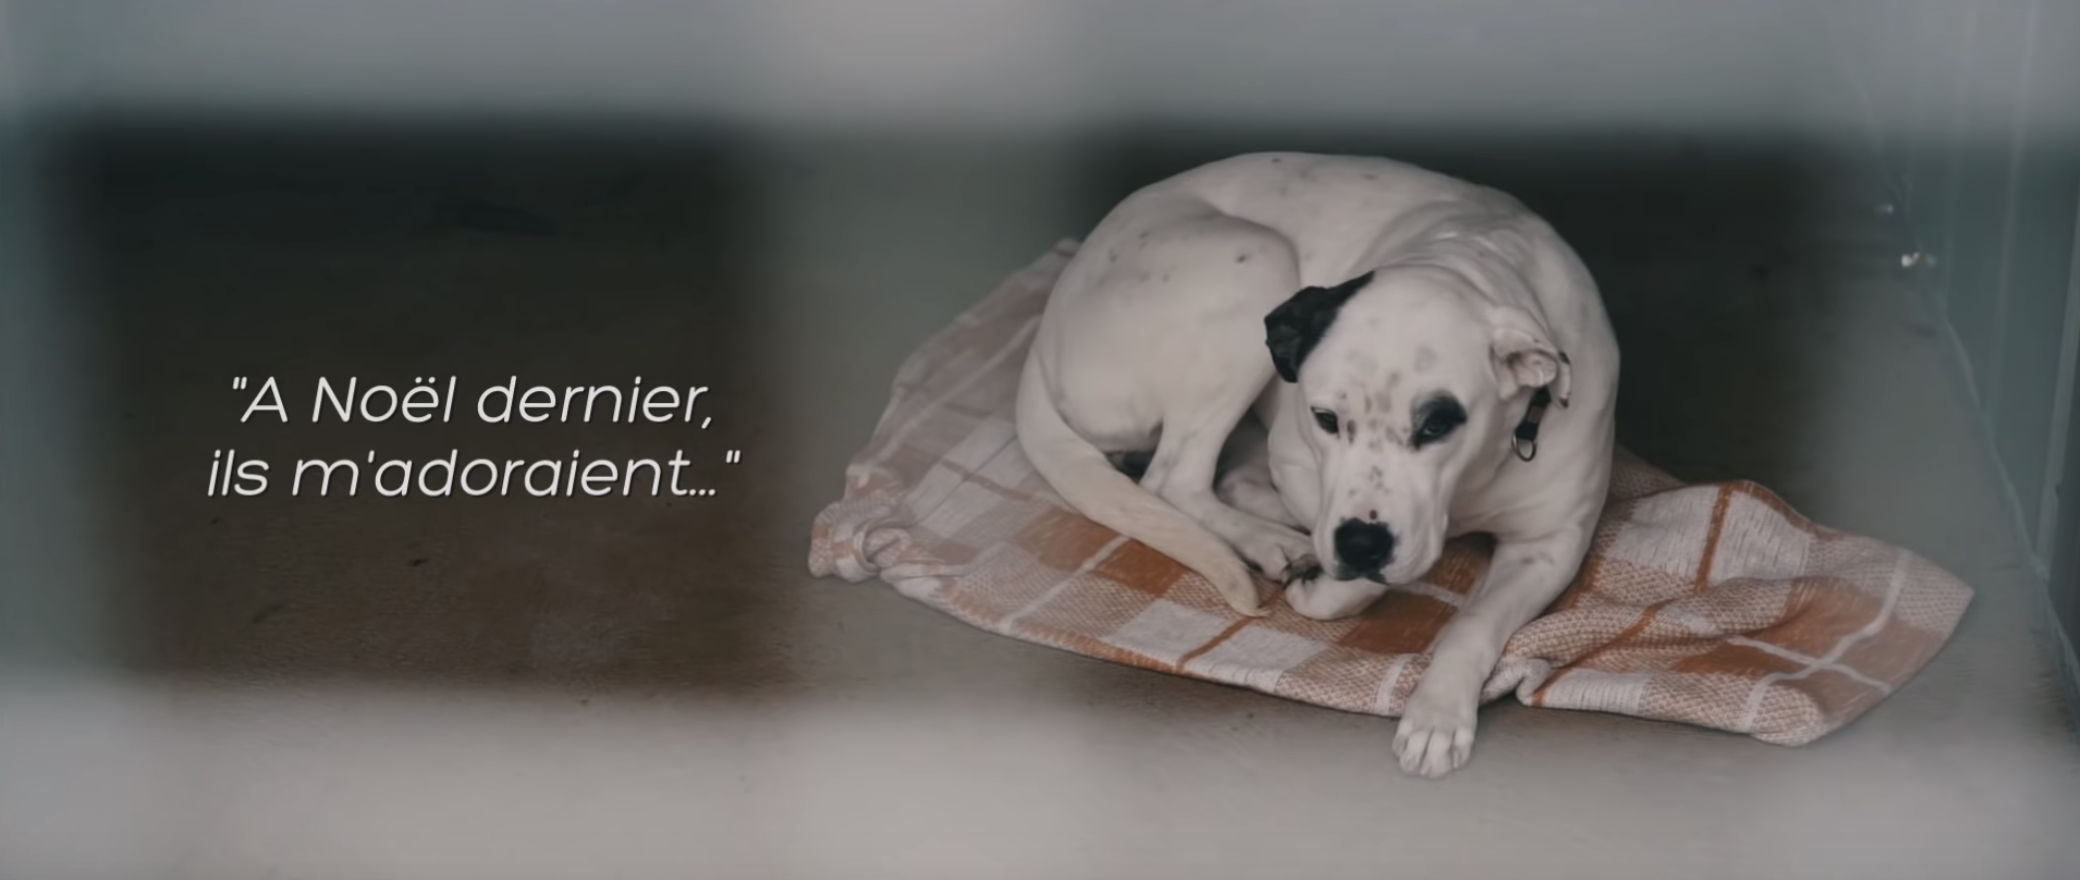 chien dans un refuge avec le texte suivant : "À Noël dernier, ils m'adoraient"